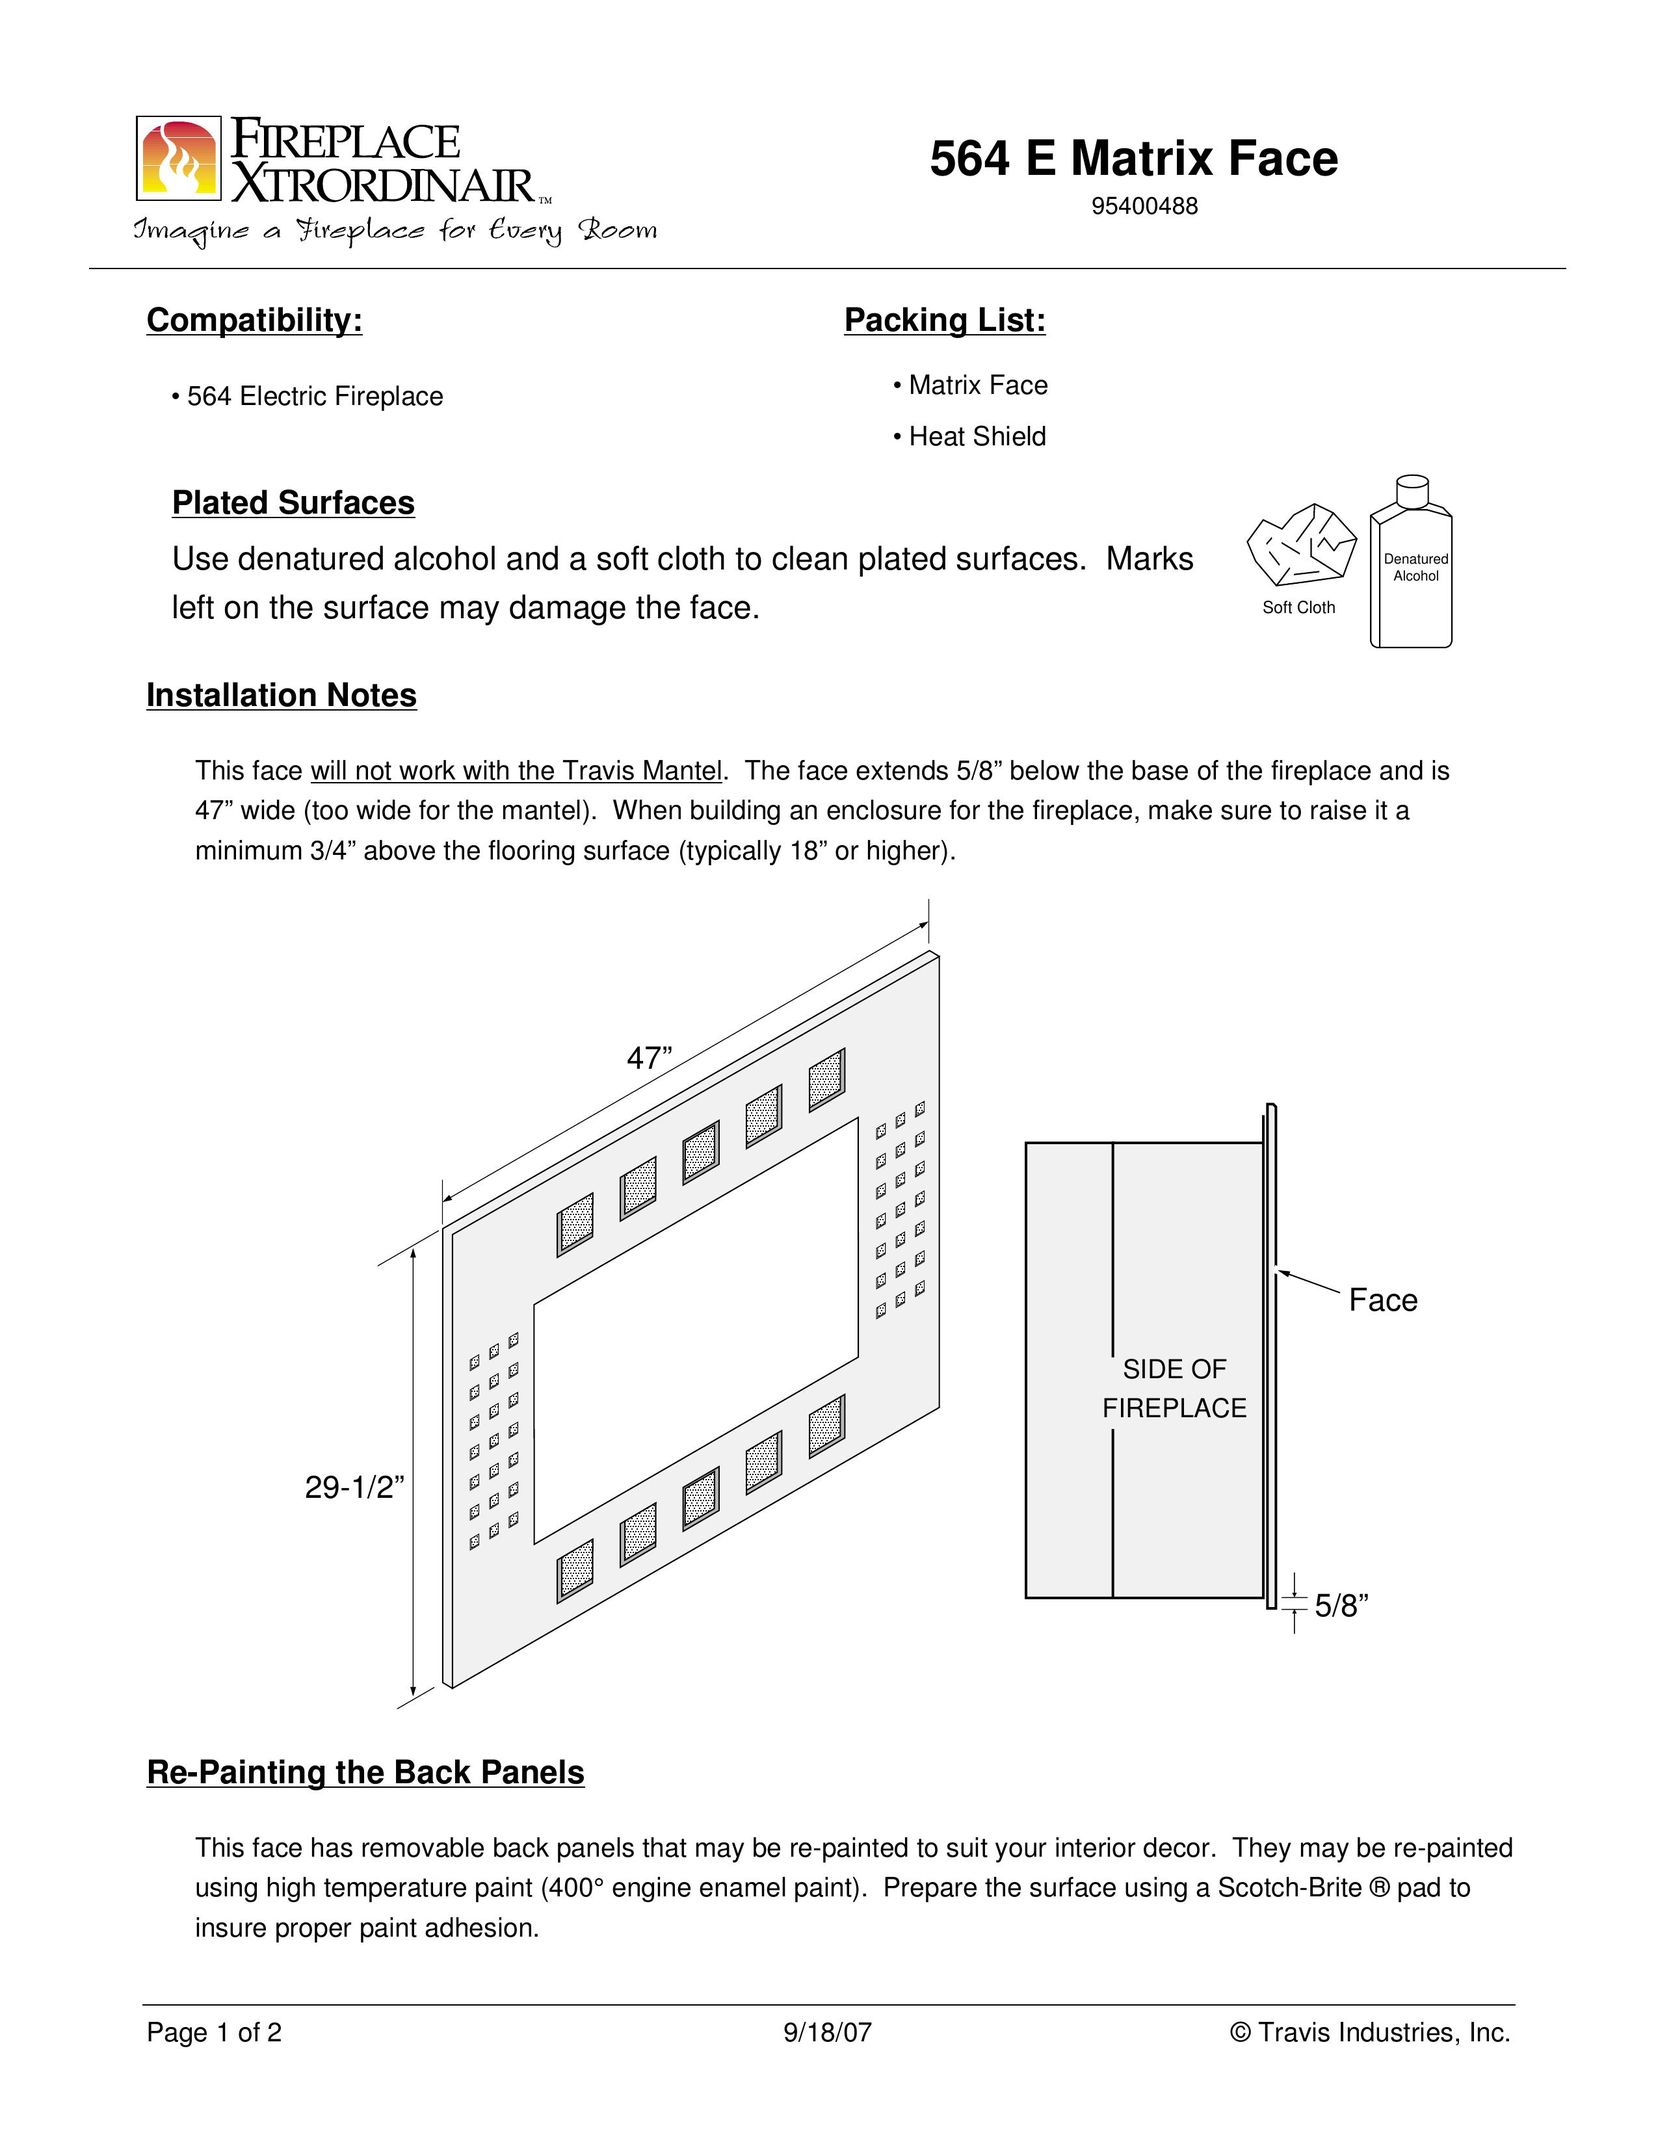 FireplaceXtrordinair 564 E Indoor Fireplace User Manual